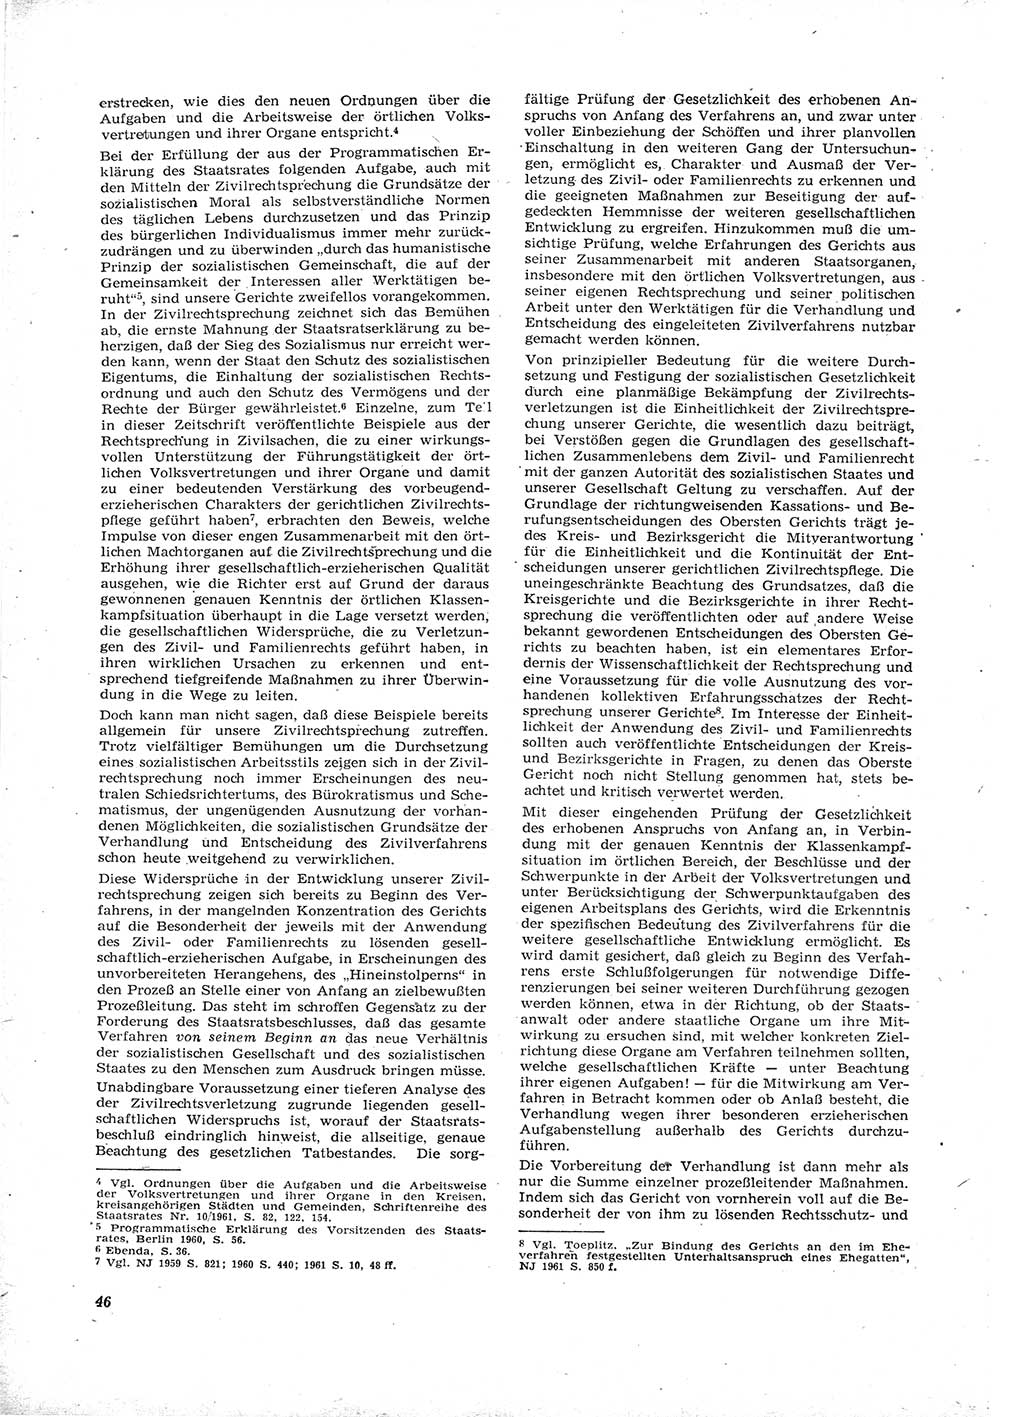 Neue Justiz (NJ), Zeitschrift für Recht und Rechtswissenschaft [Deutsche Demokratische Republik (DDR)], 16. Jahrgang 1962, Seite 46 (NJ DDR 1962, S. 46)